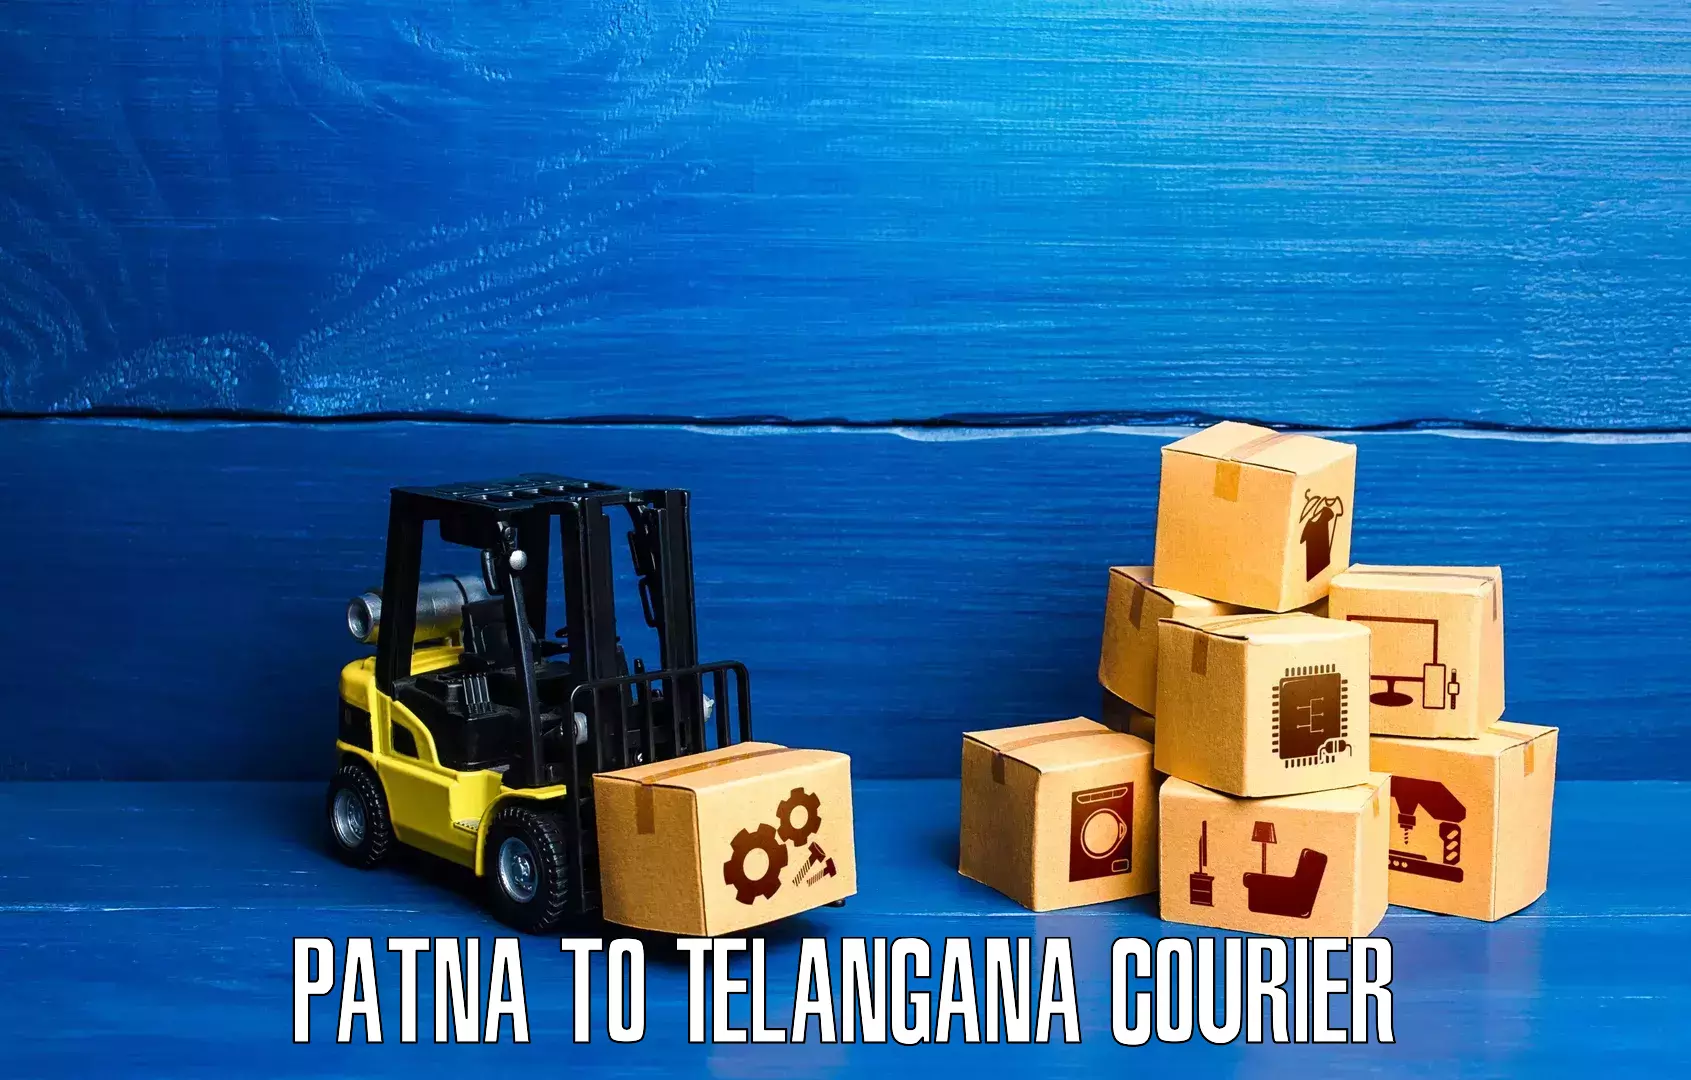 Efficient parcel service Patna to Suryapet